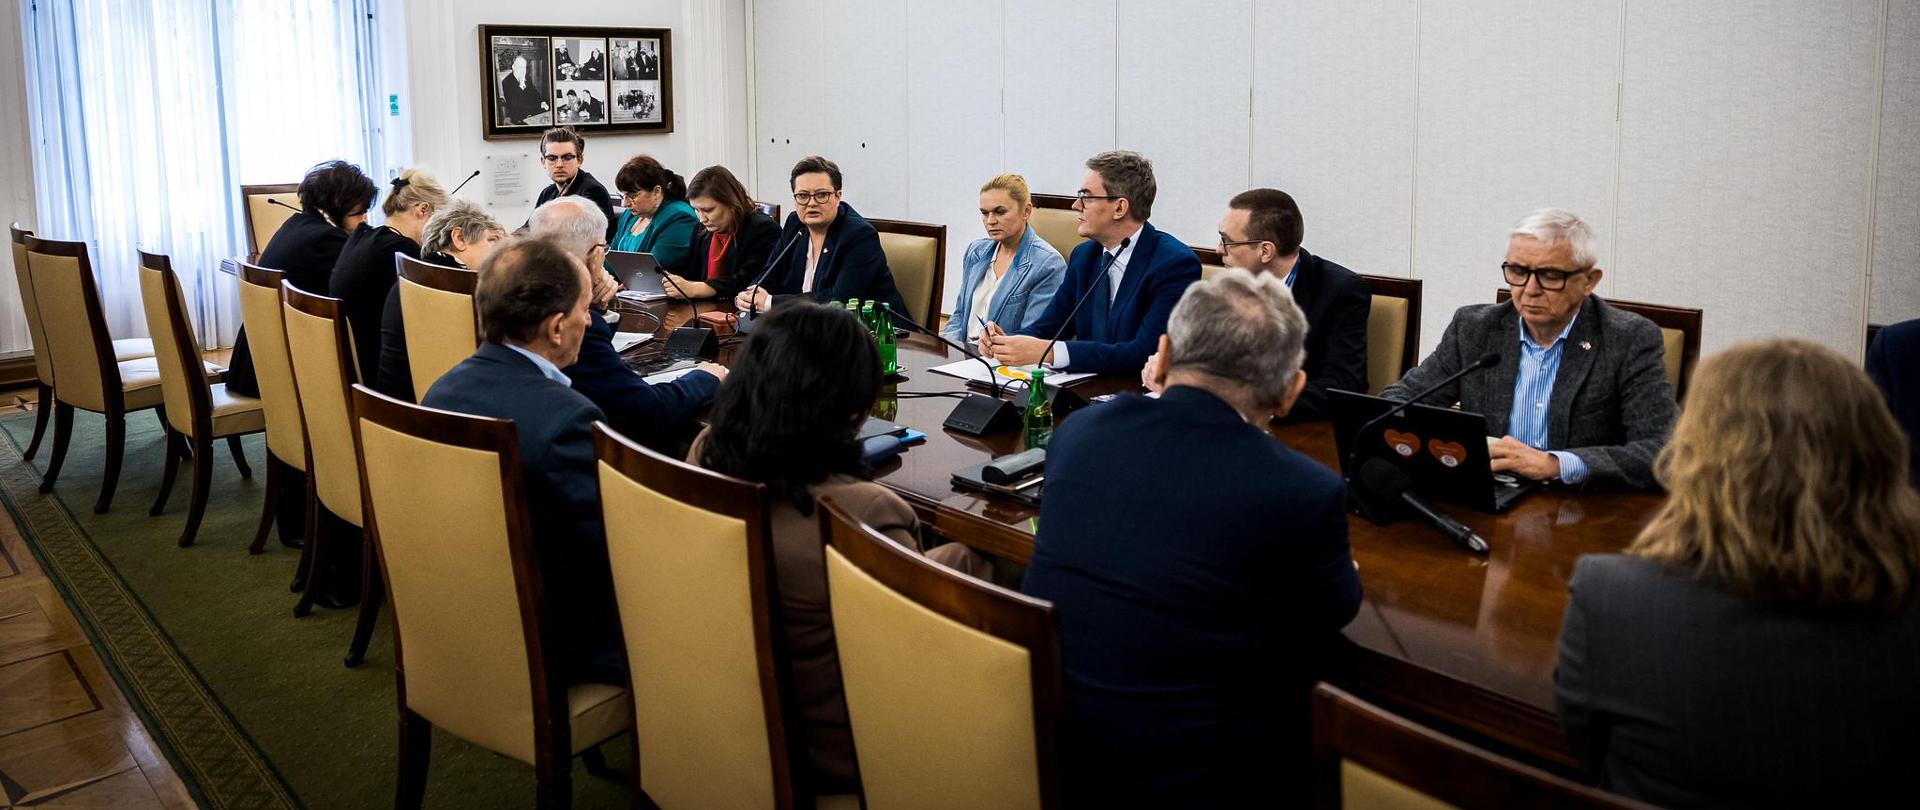 Posiedzenie Senackiej Komisji Edukacji z udziałem minister Barbary Nowackiej, ucze4stnicy siedzą przy stole i dyskutują na temat działań dotyczących edukacji 